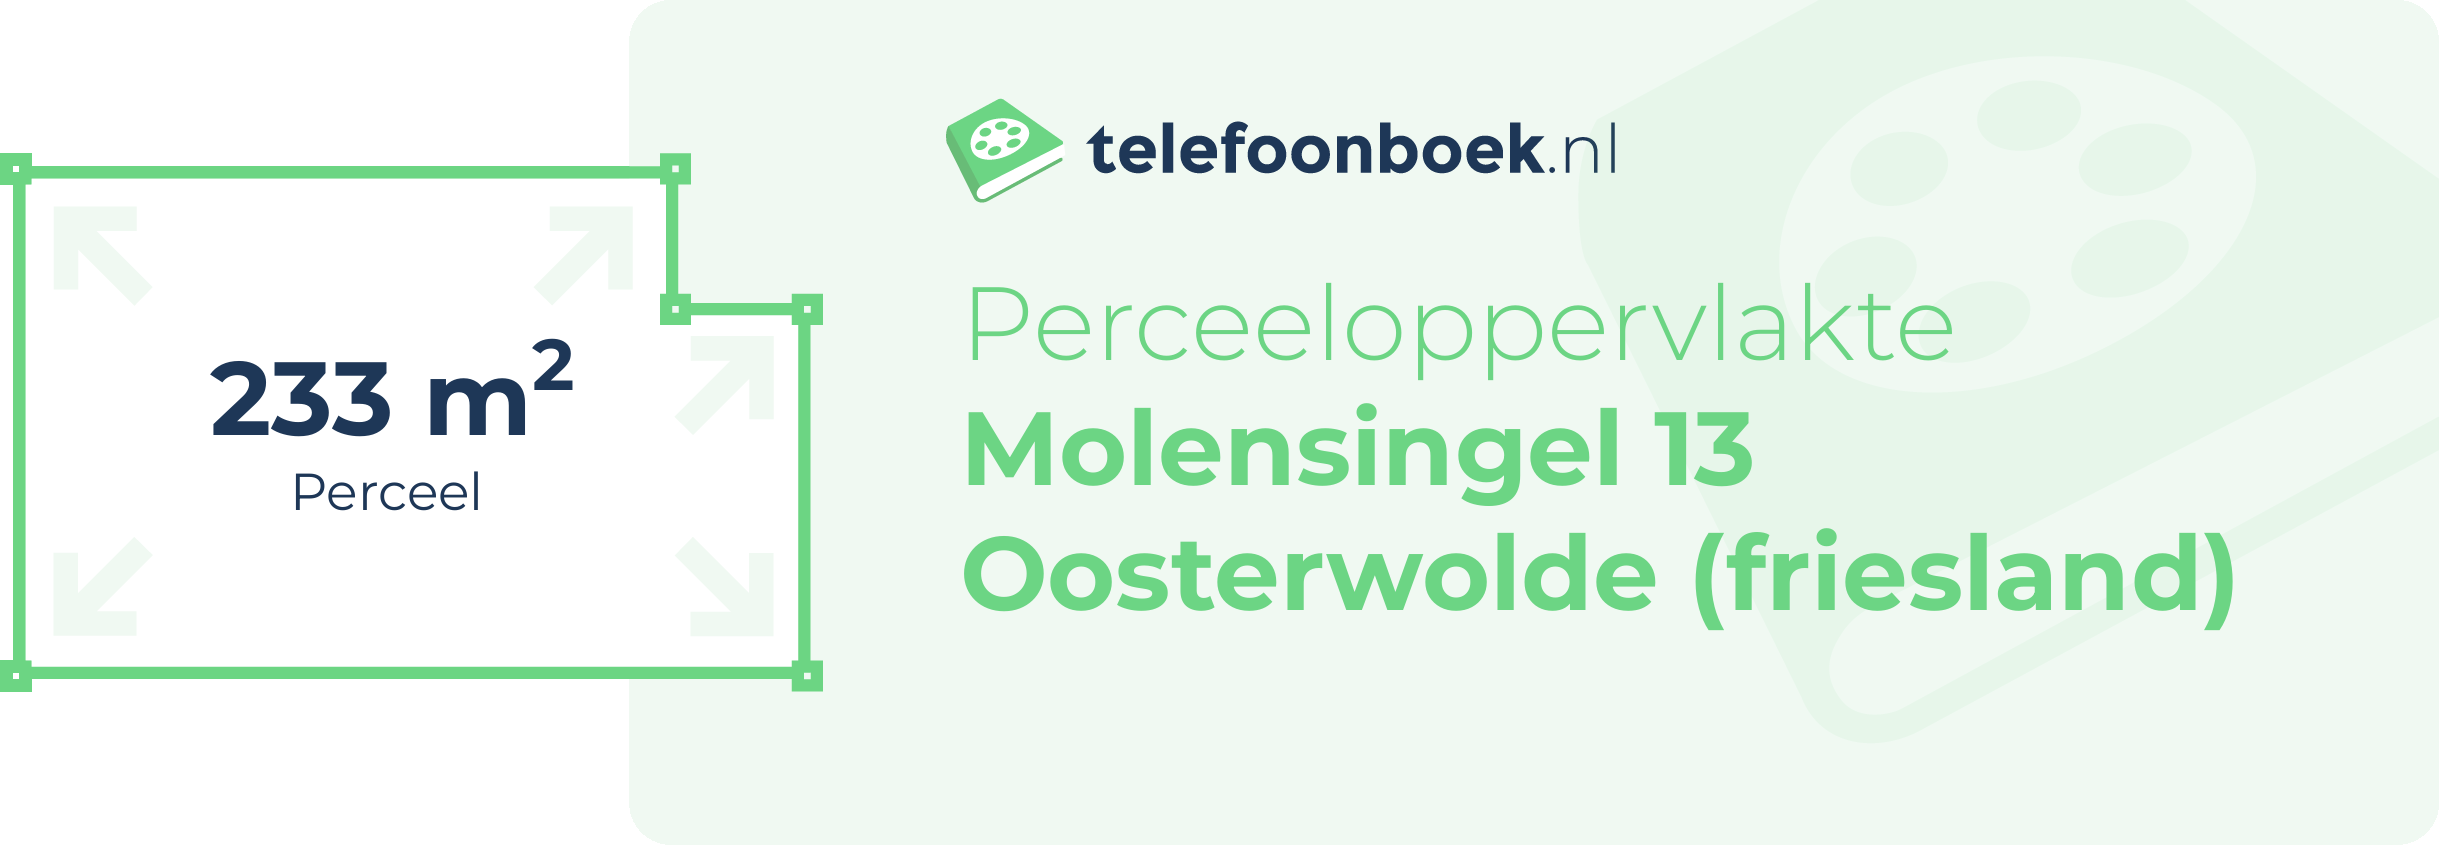 Perceeloppervlakte Molensingel 13 Oosterwolde (Friesland)